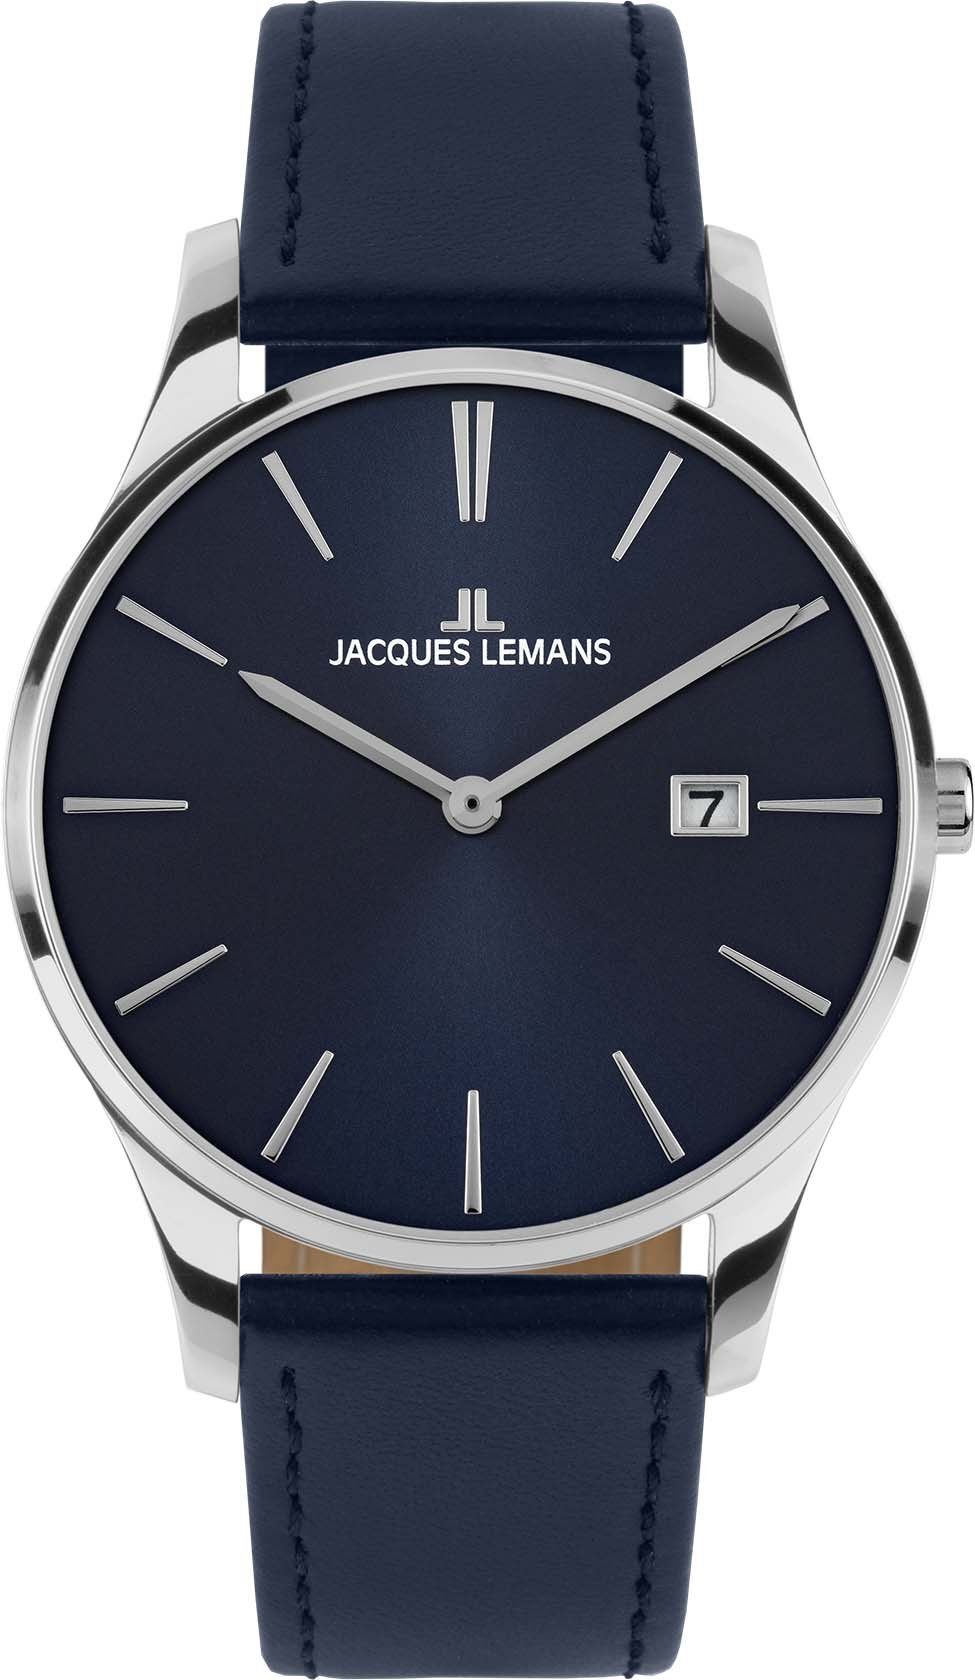 Jacques Lemans Quarzuhr London, 1-2122C, Armbanduhr, Damenuhr, Datum, gehärtetes Crystexglas